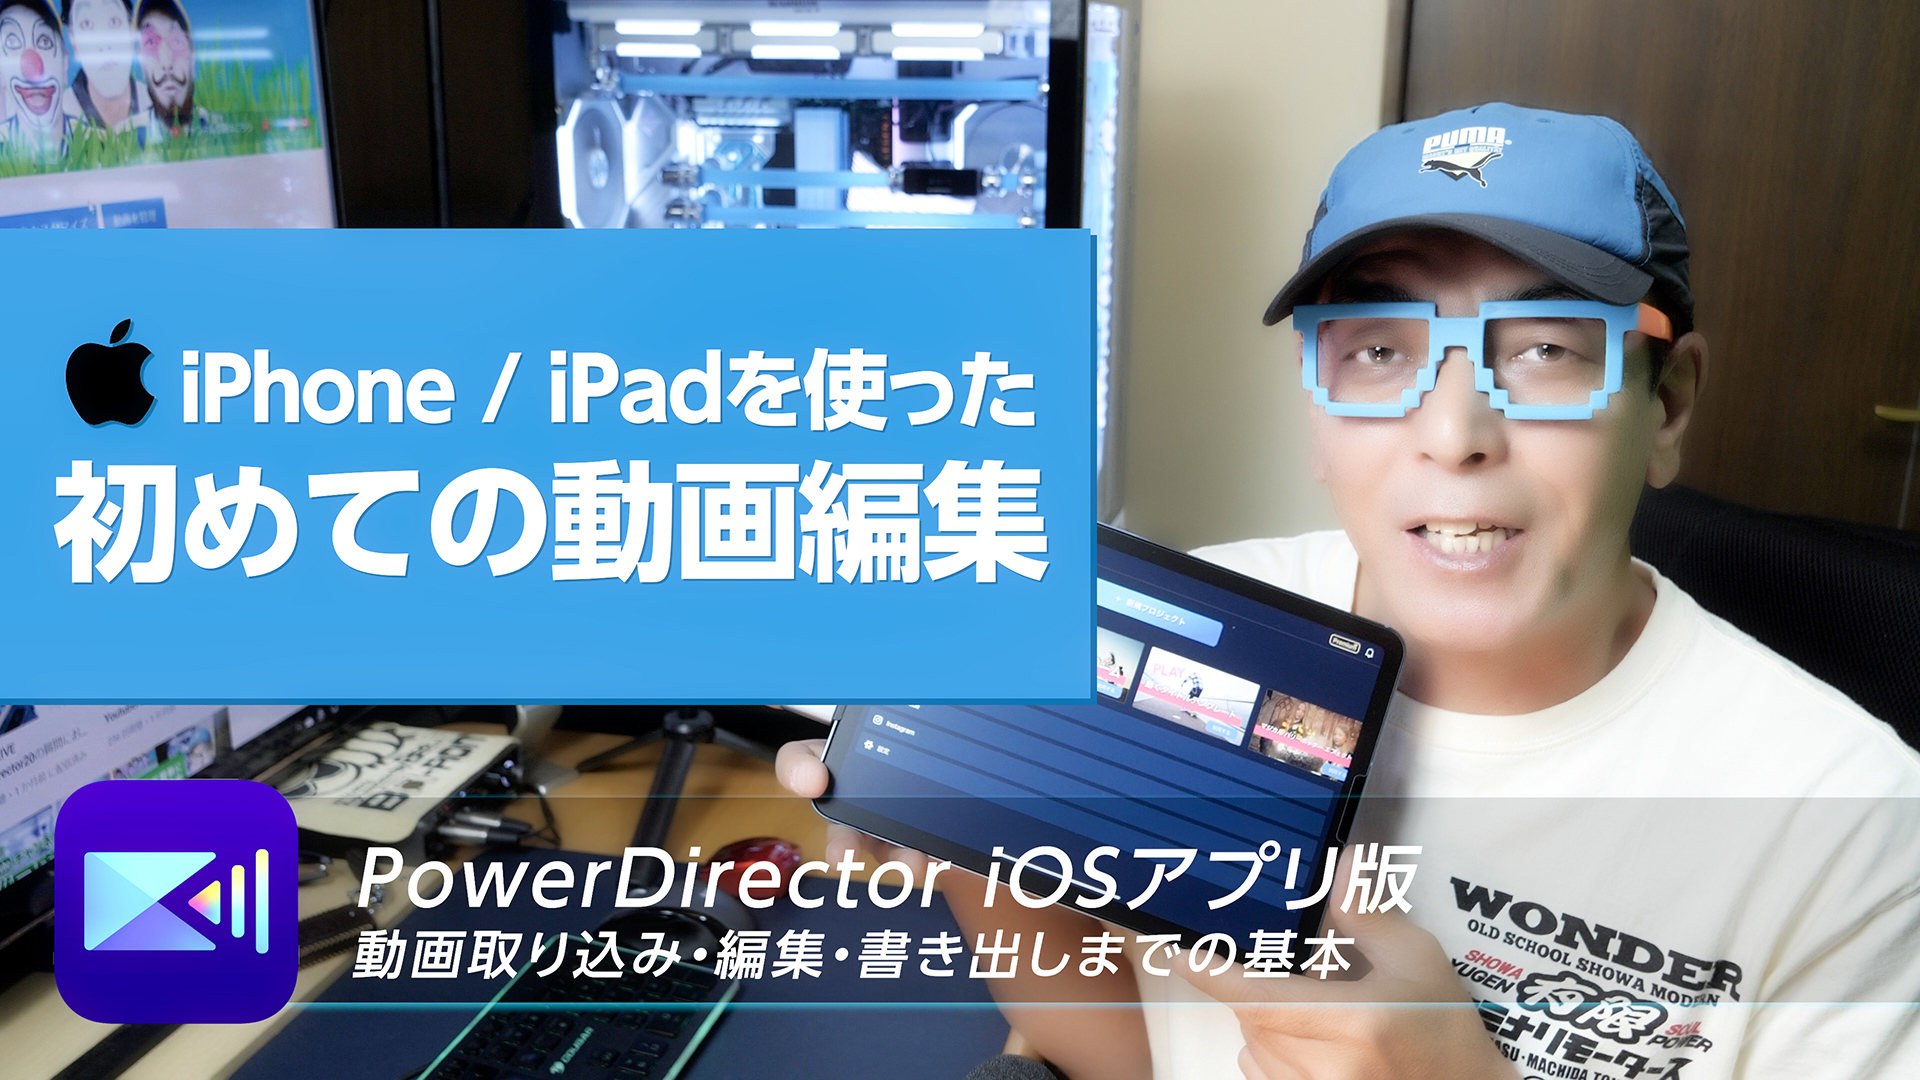 iPhone / iPadを使った初めての動画編集解説40分！(基本設定・カット割り・テロップ・出力) - PowerDirector iOSアプリ版